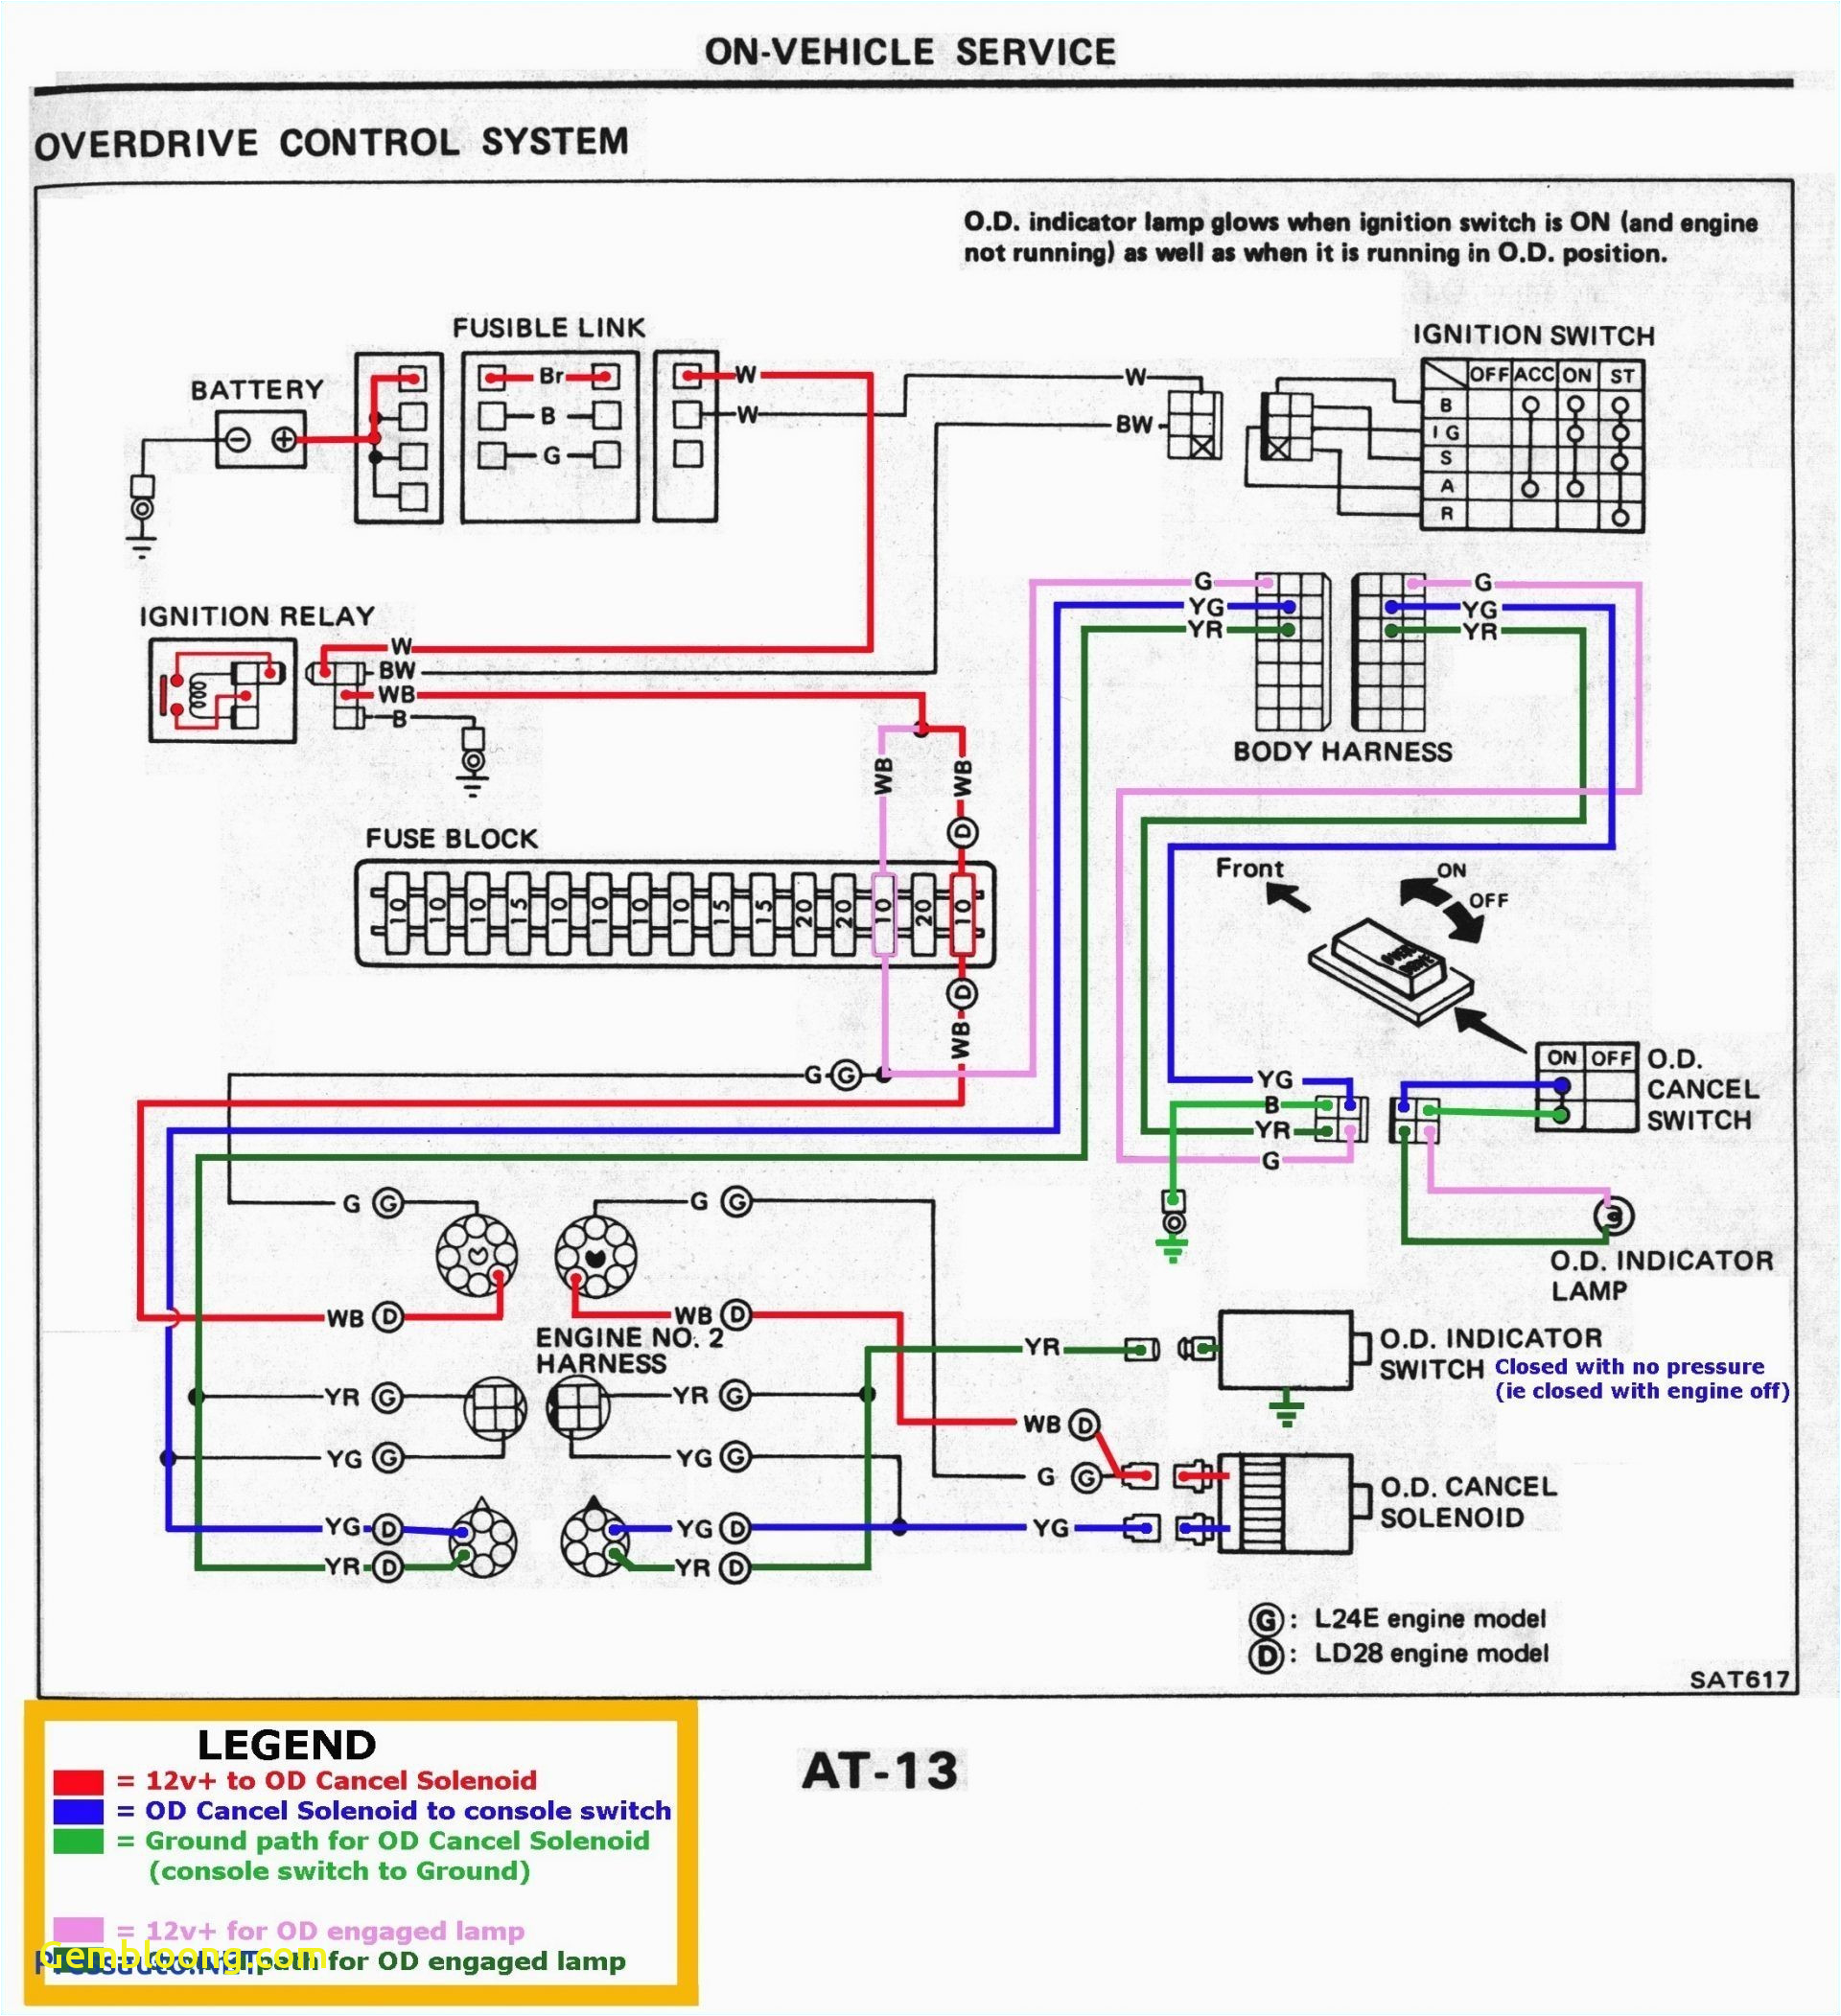 2001 chevy silverado knock sensor wiring diagram free download 2001 chevy silverado knock sensor wiring diagram free download